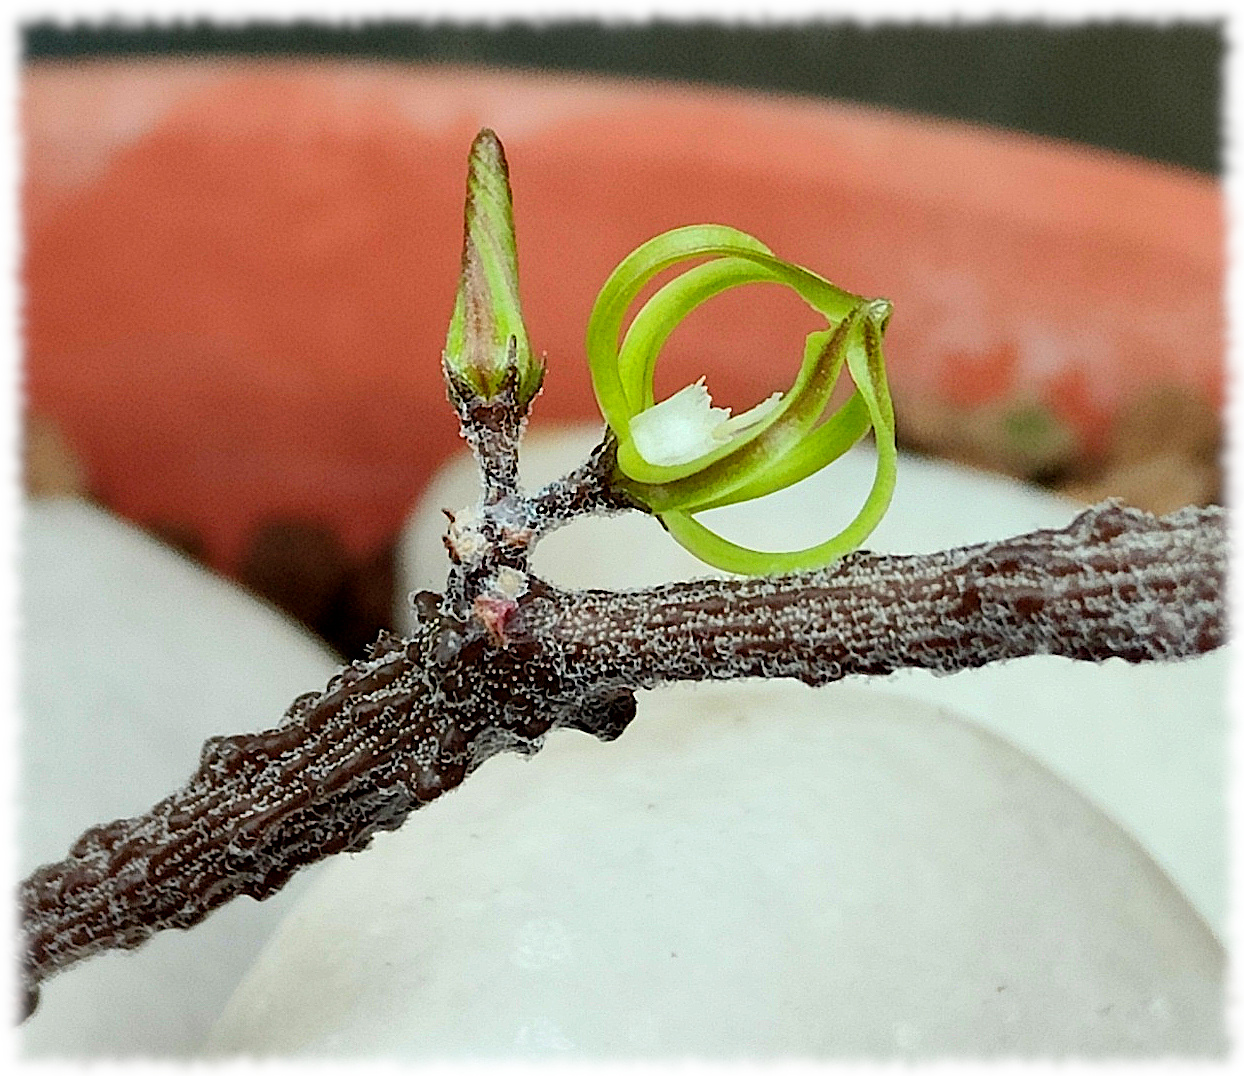 Cynanchum marnierianum una diminuta flor de medio cm. pero llama mucho la atención ver un aparente palo seco del que le salen pequeños farolillos